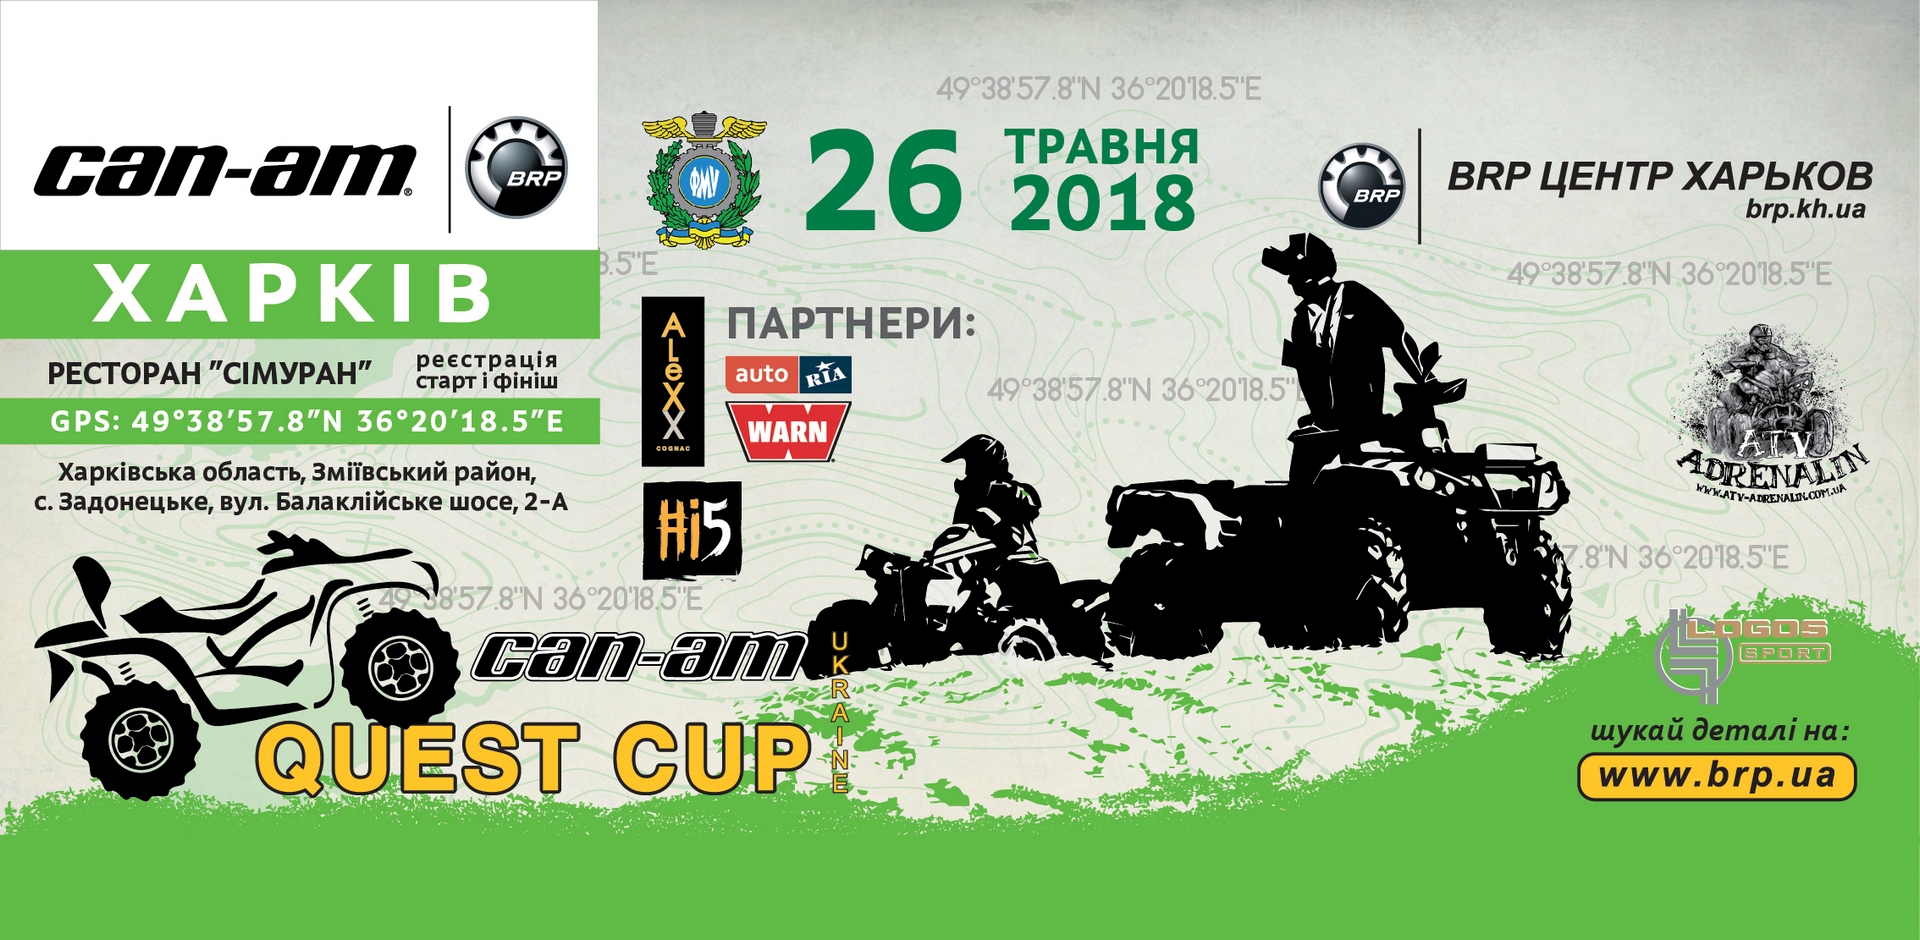 Серія «CAN-AM QUEST CUP 2018»! 26 травня – третій етап – Харків.